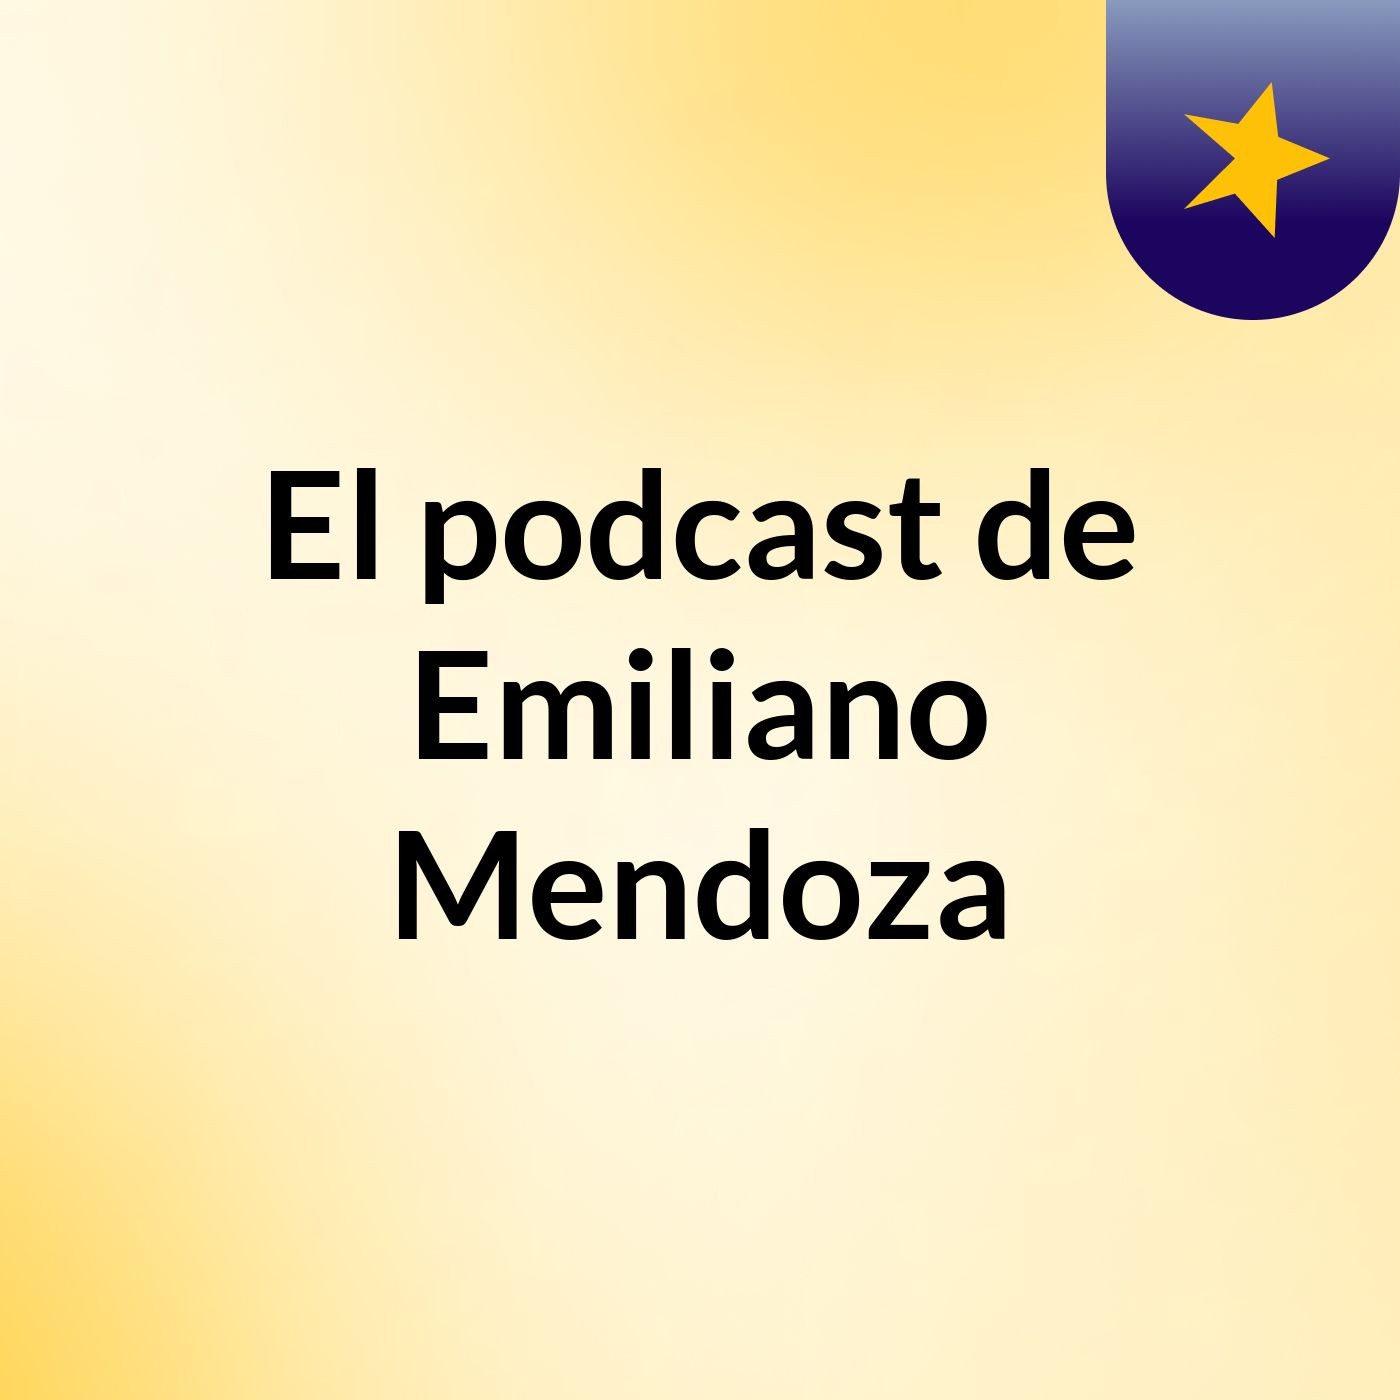 El podcast de Emiliano Mendoza